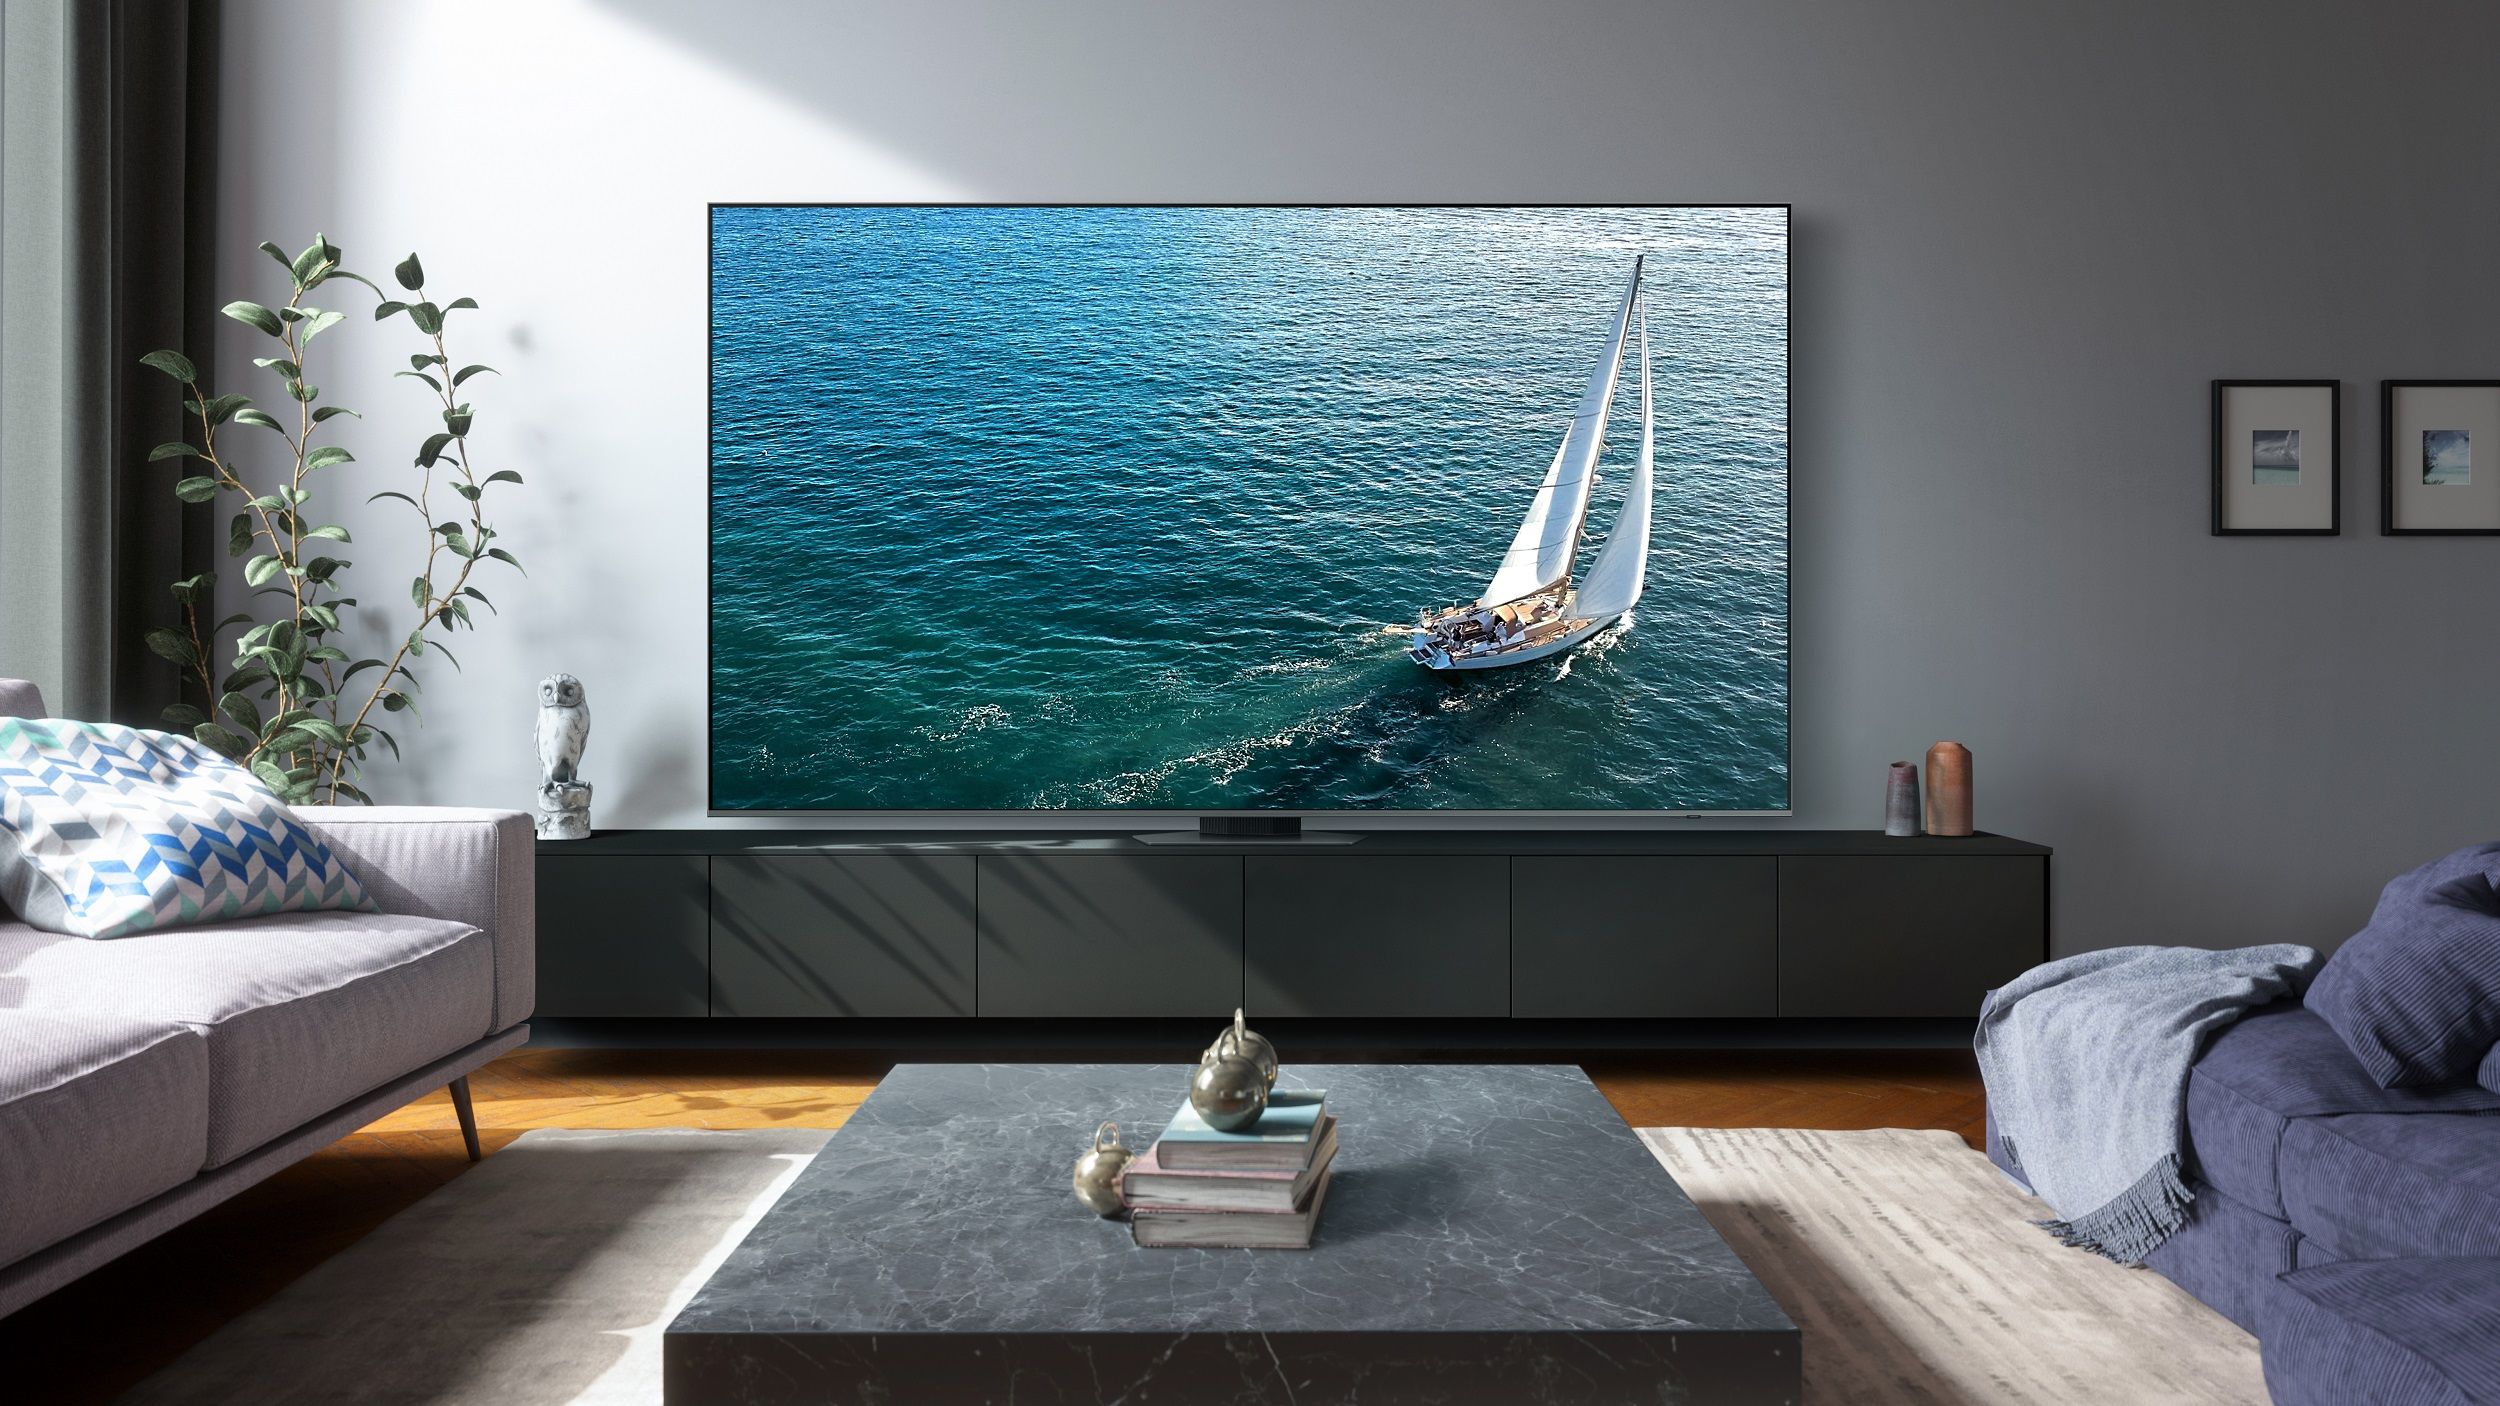 Można już kupować potężny telewizor Samsung Q80C z ekranem 98 cali! Cena niższa niż myślisz